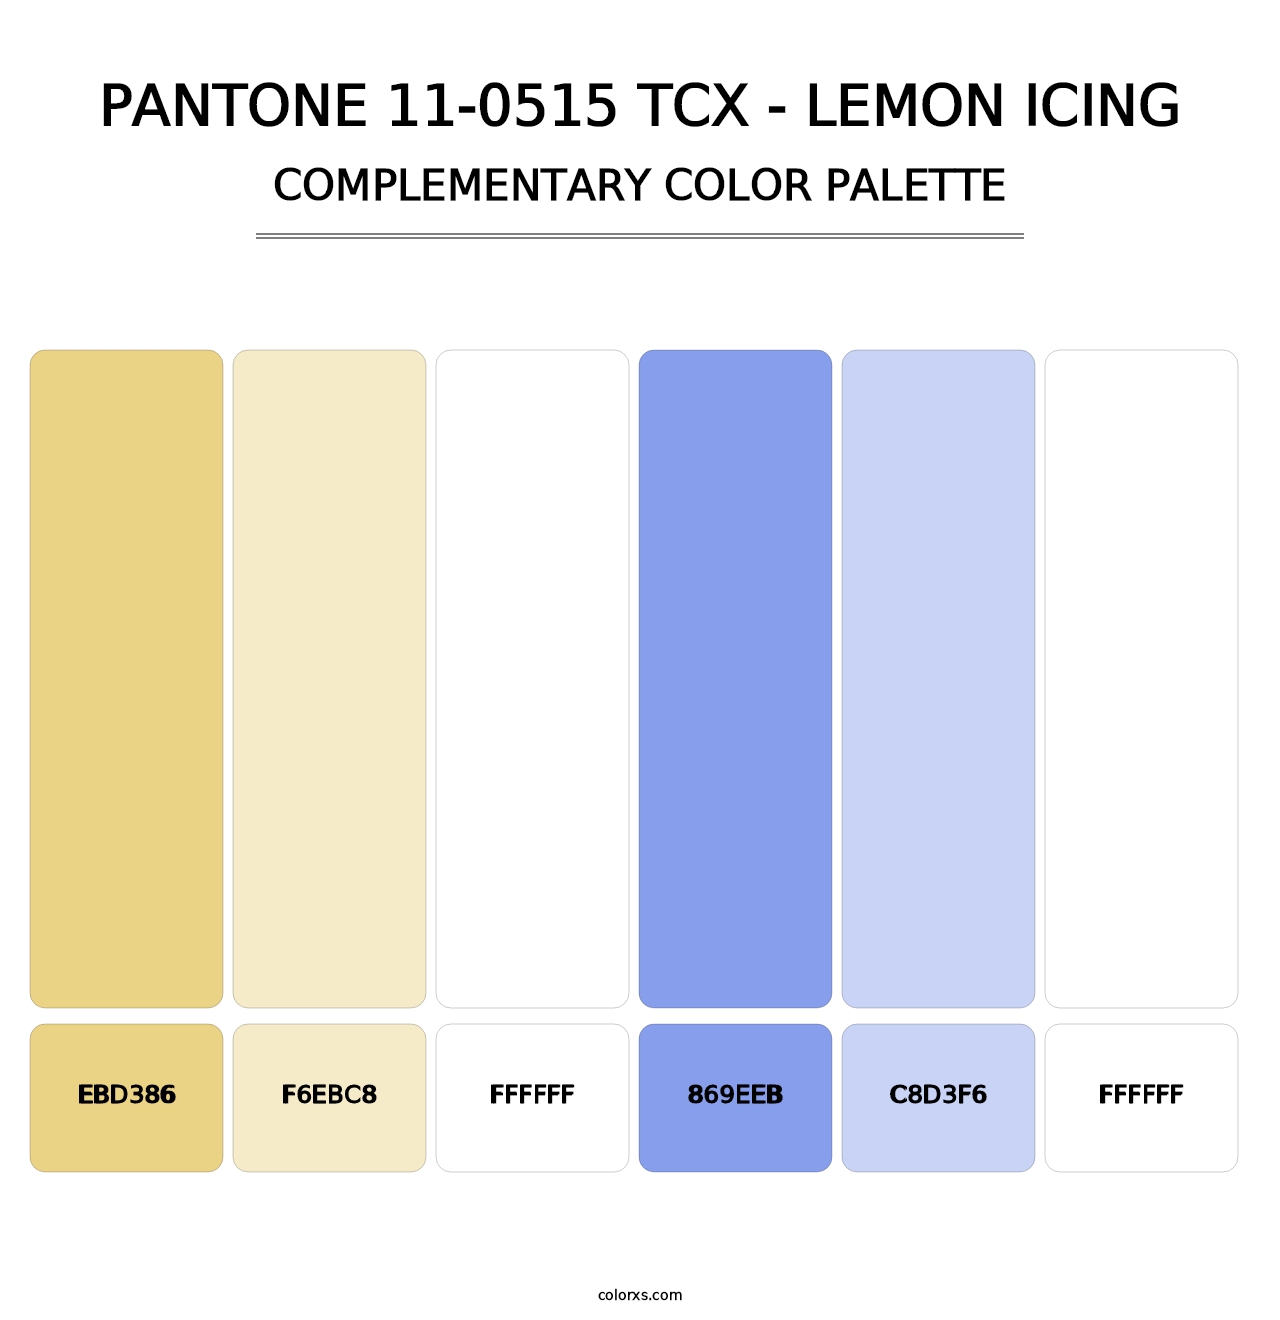 PANTONE 11-0515 TCX - Lemon Icing - Complementary Color Palette